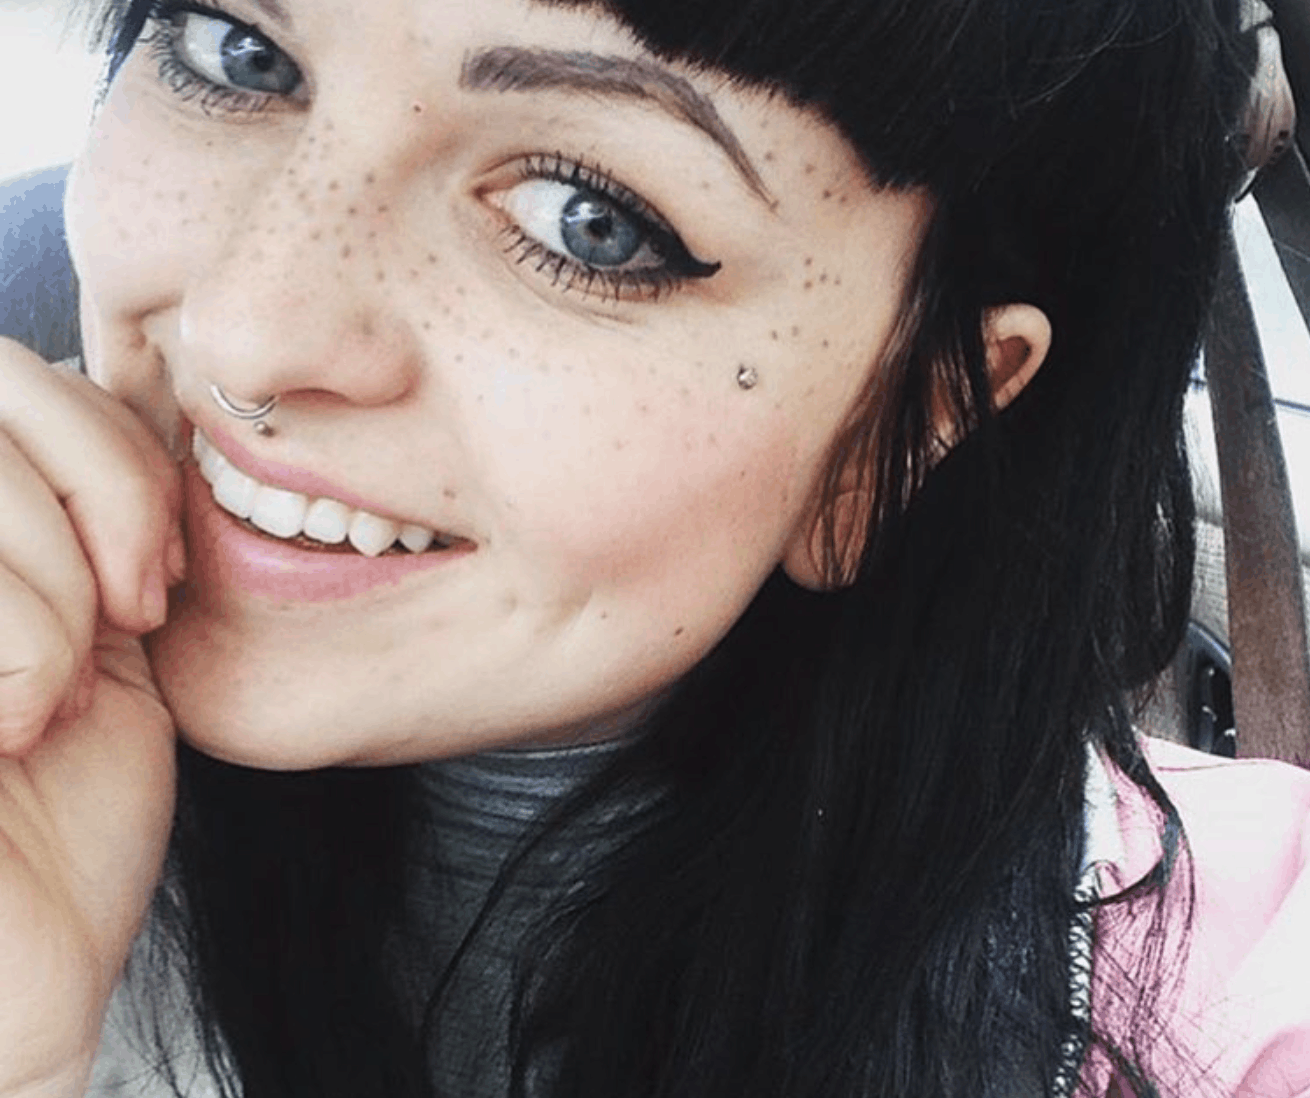 “Freckling', la moda de tatuarse pecas